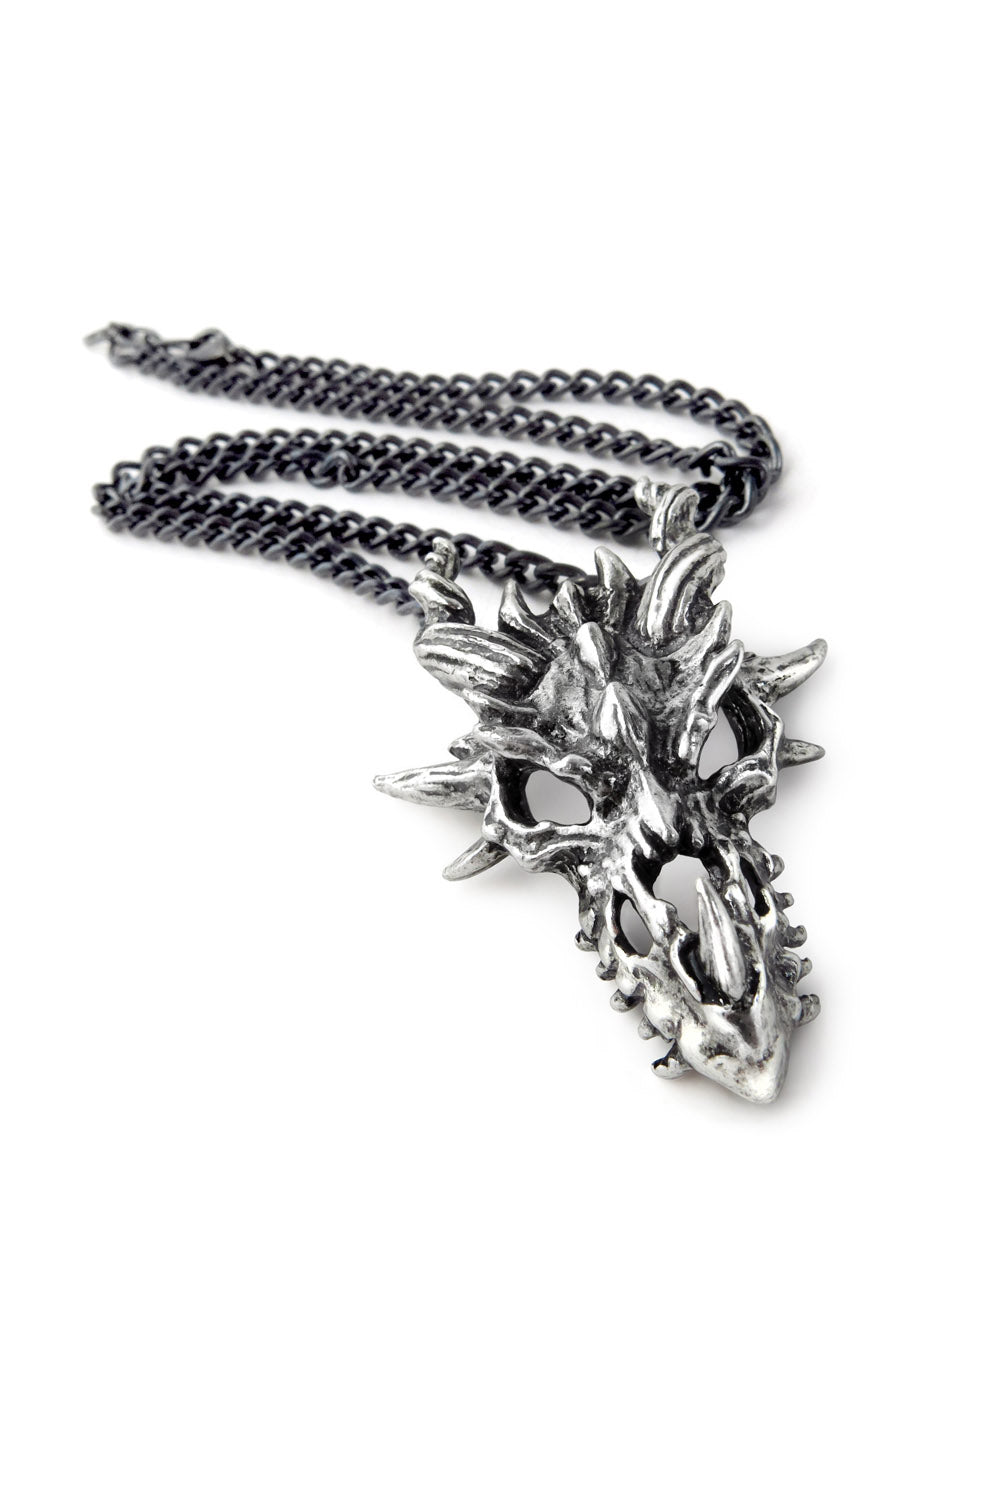 Dragon Skull Necklace